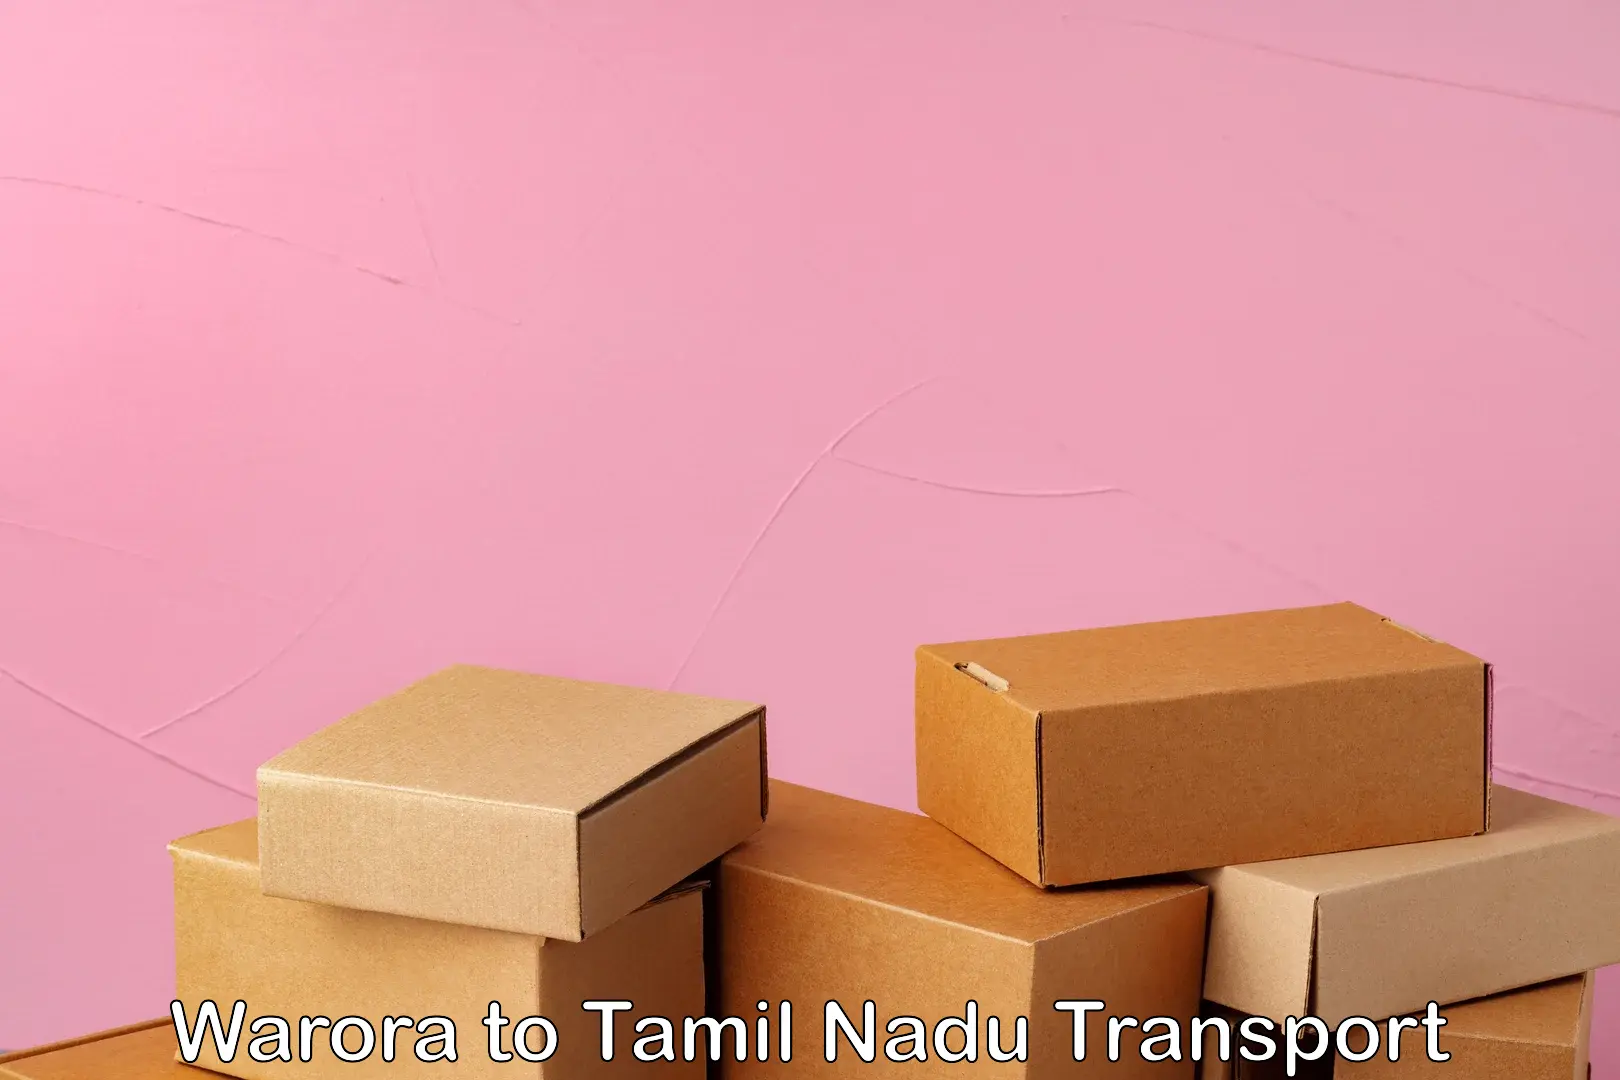 Transport shared services Warora to Tamil Nadu